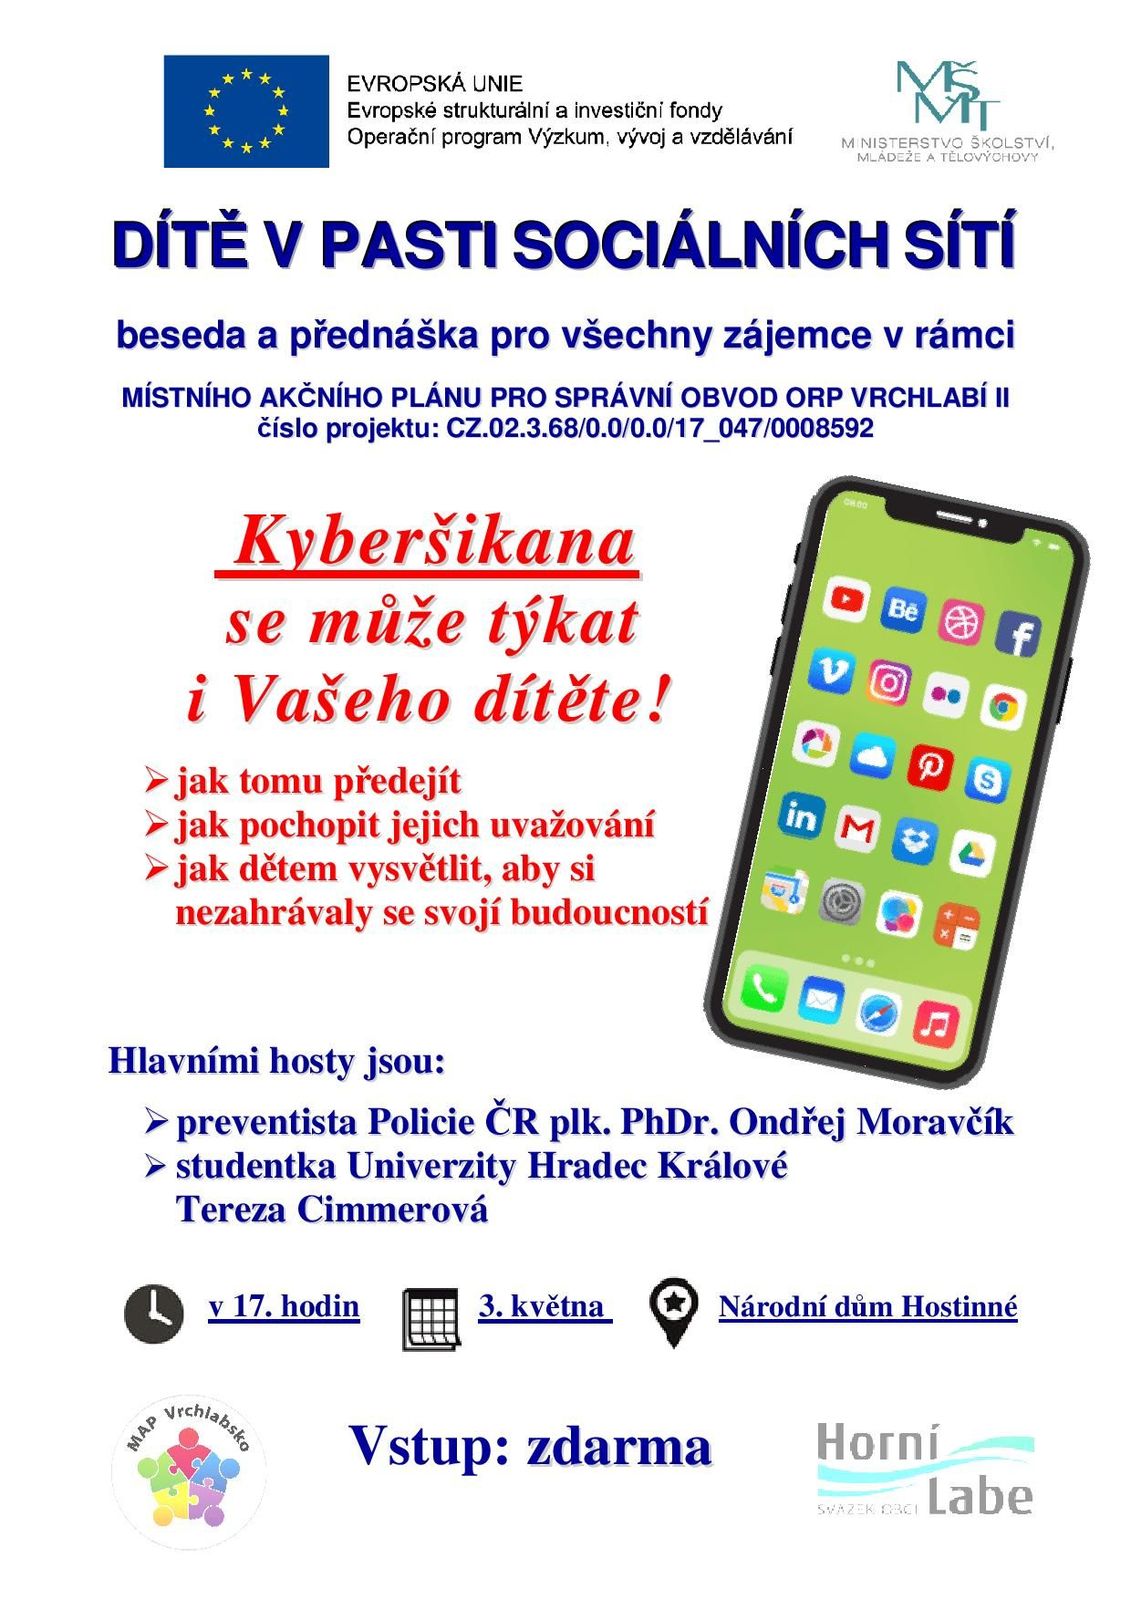 Pozvánka na přednášku "Dítě v pasti sociálních sítí" v Národním domě v Hostinném 3.5.2022